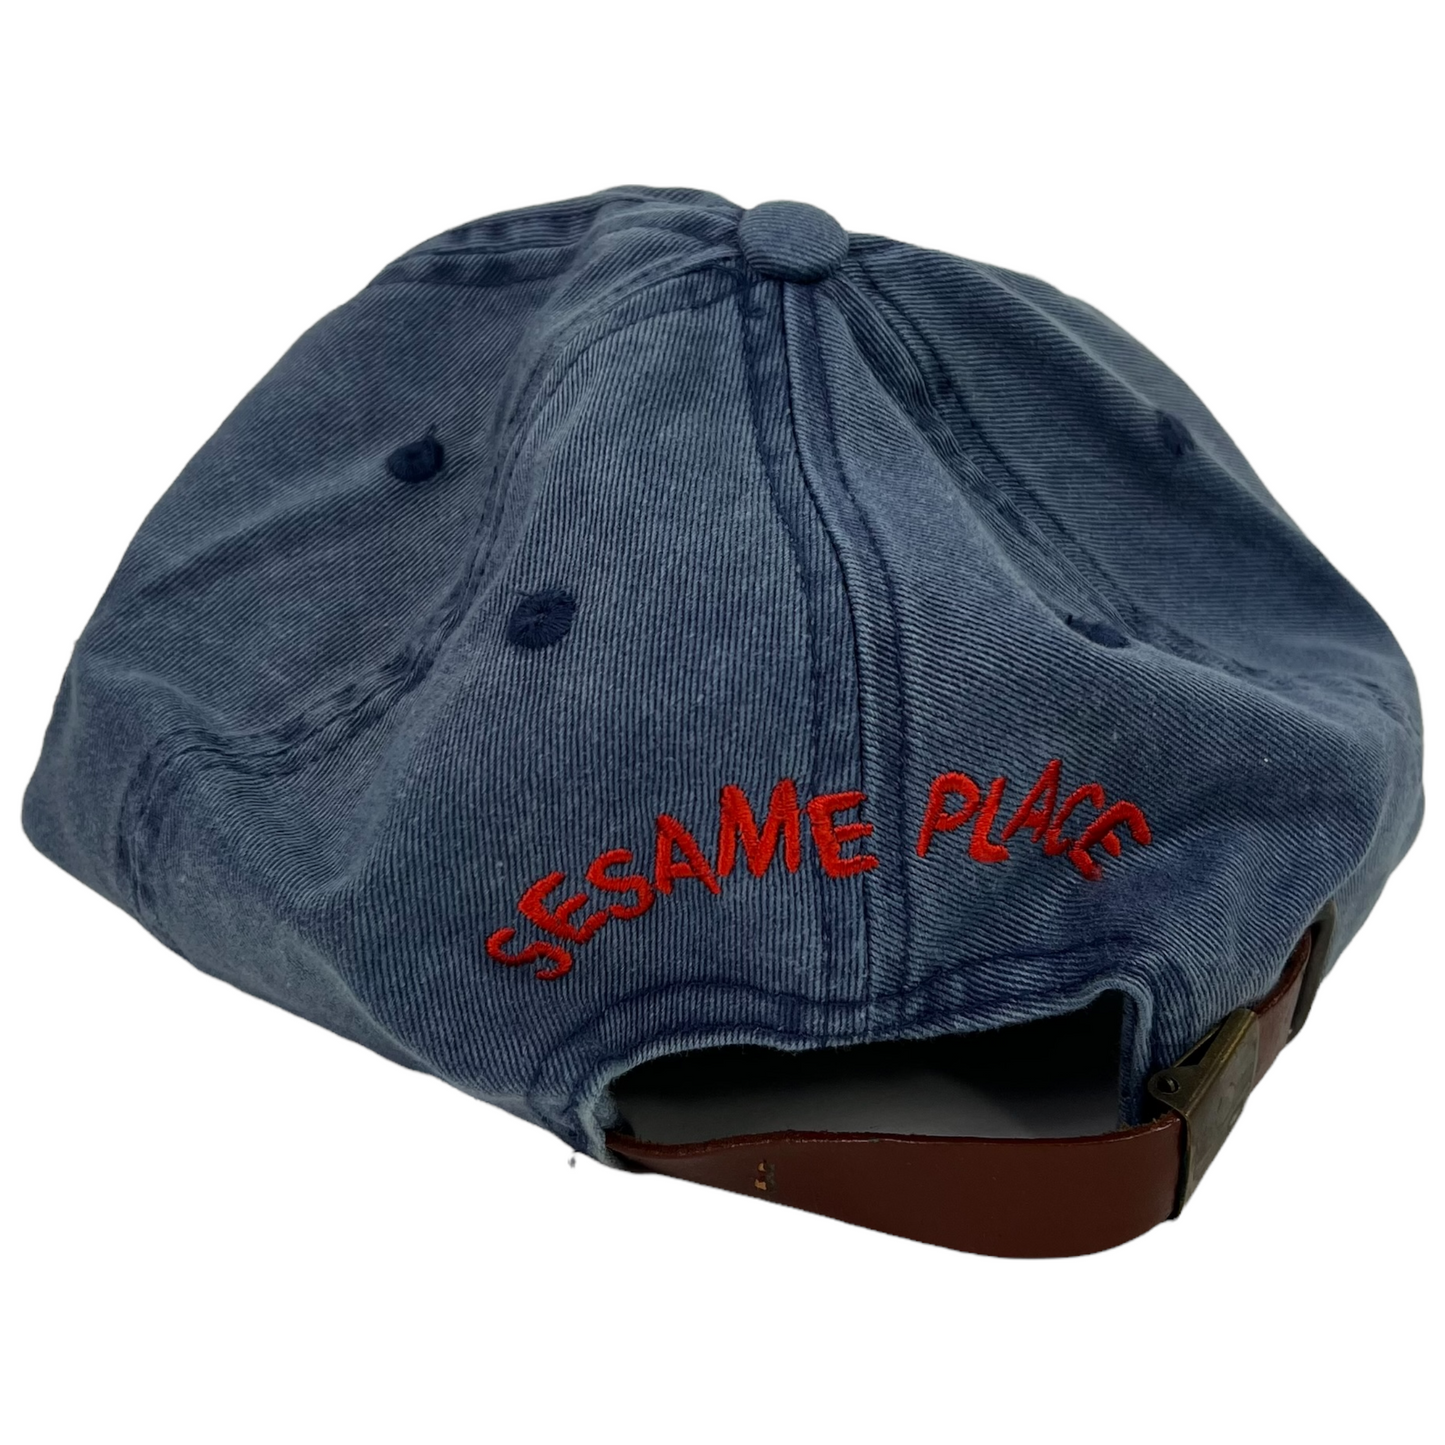 Vintage 2000s Elmo Sesame Place denim strap back hat